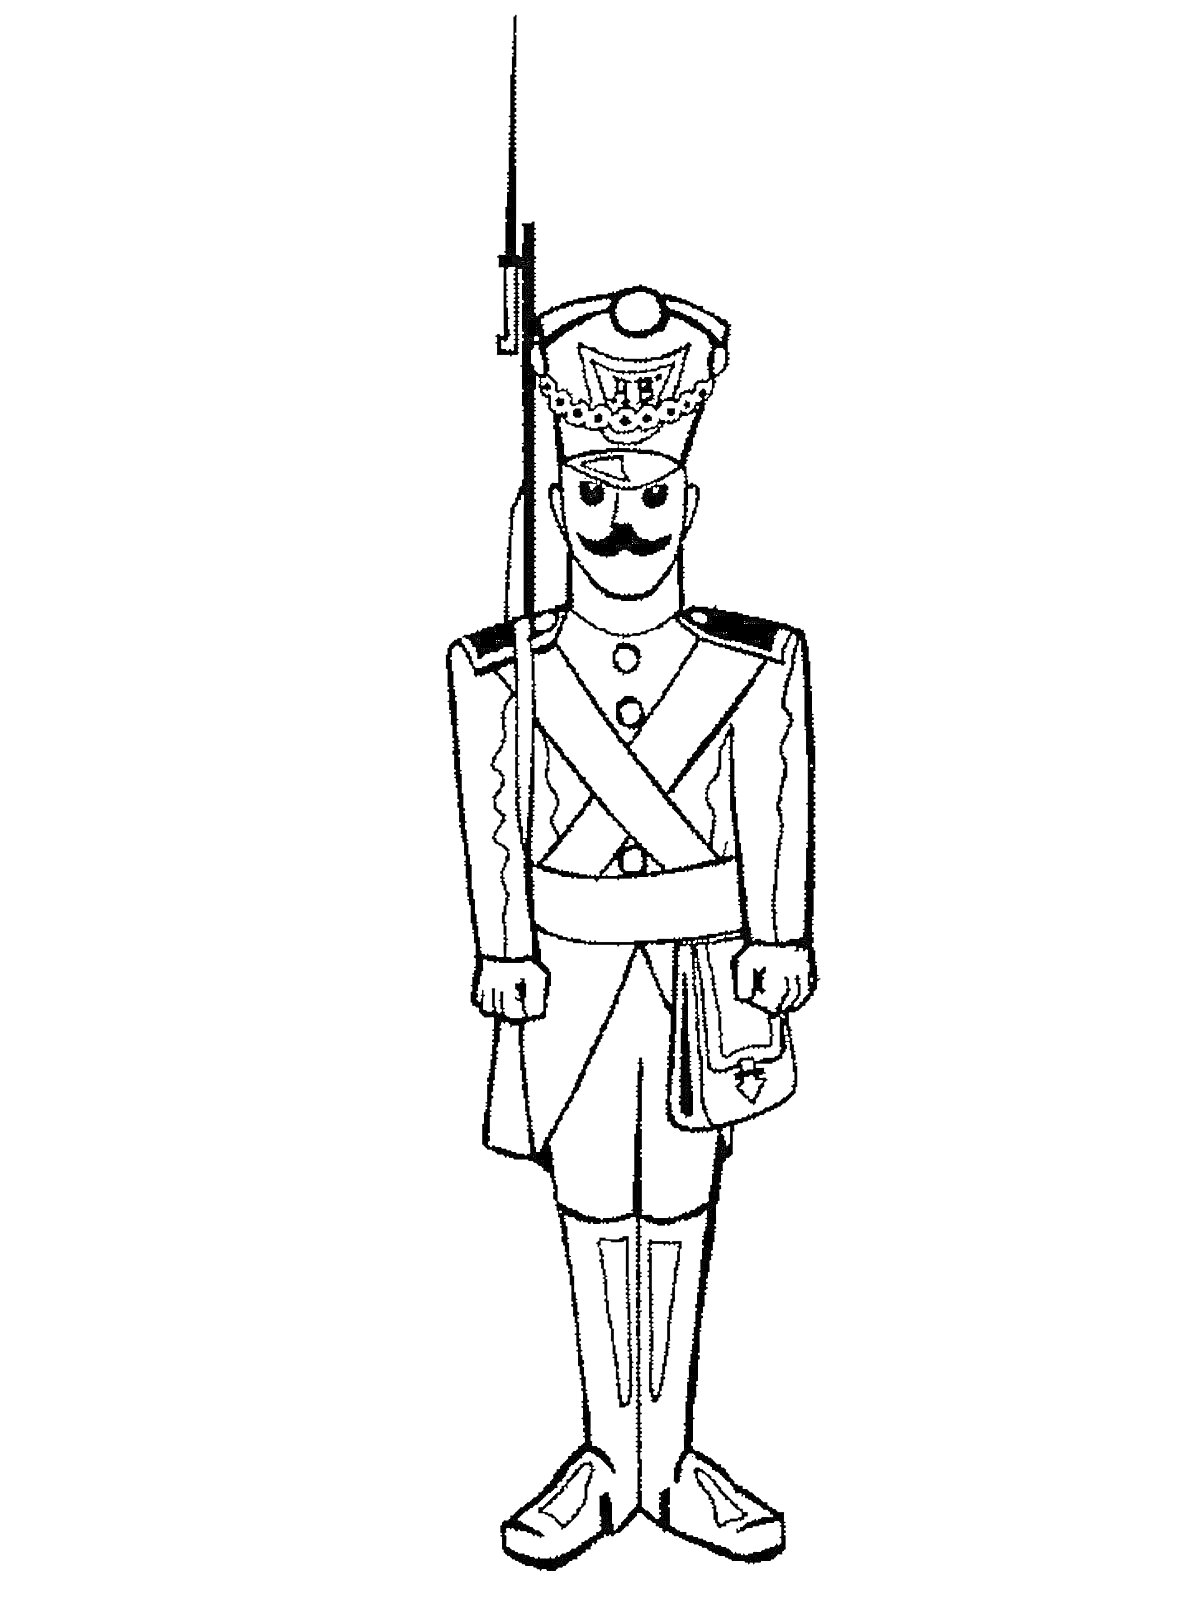 Солдат с усами в парадной форме, с ружьем с примкнутым штыком, с сумкой через плечо